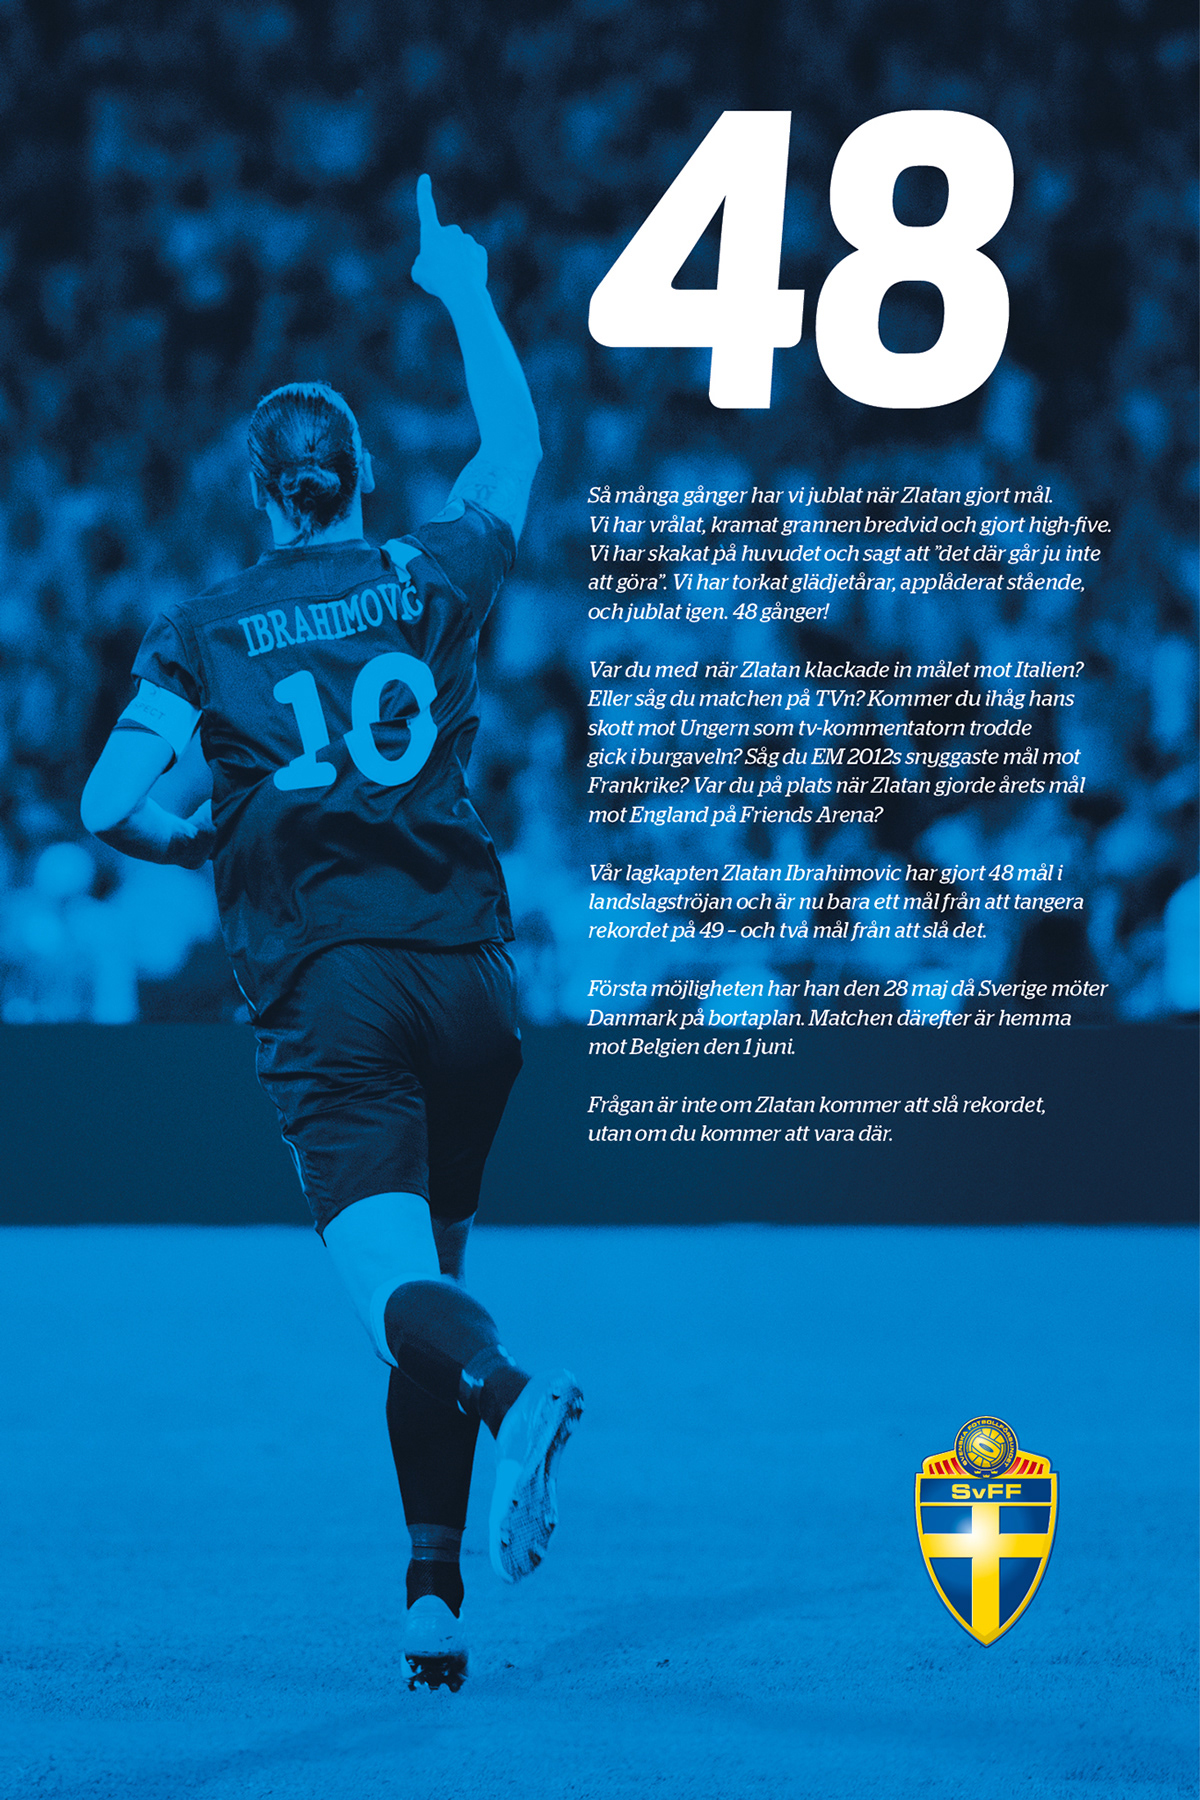 SvFF Svenska Fotbollförbundet zlatan ibrahimovic ibra record fotboll football soccer advert